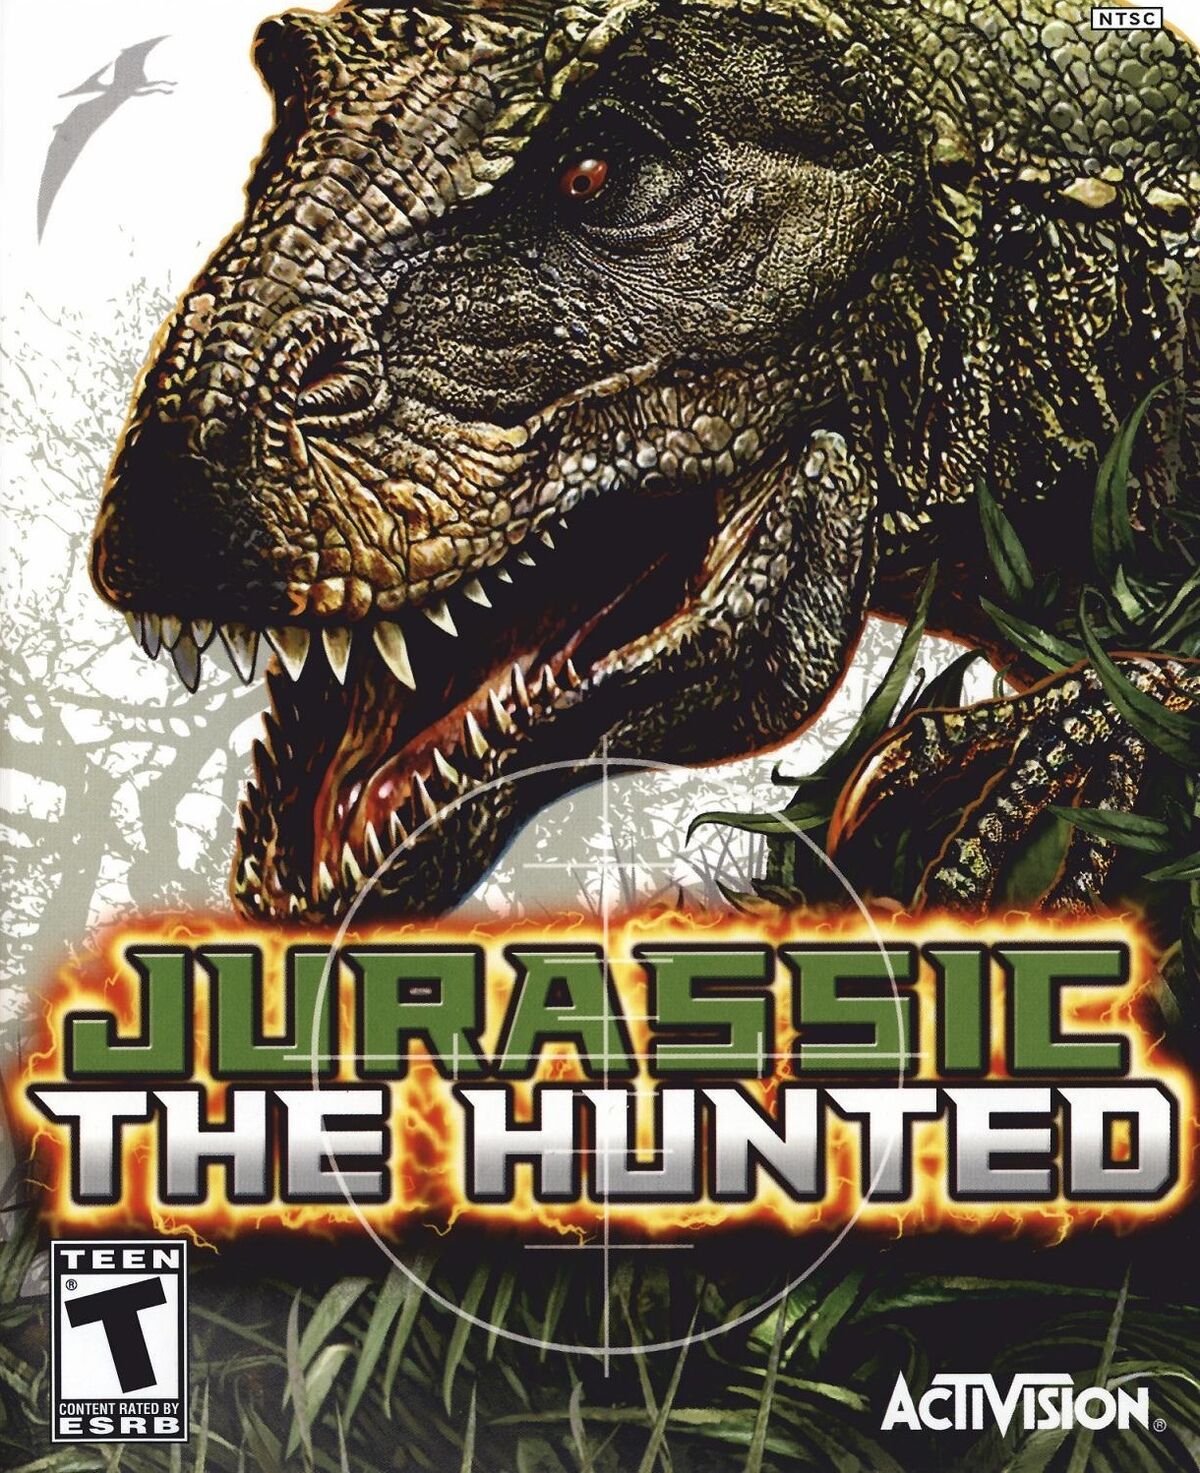 Battle of Giants: Dinosaurs Strike - IGN